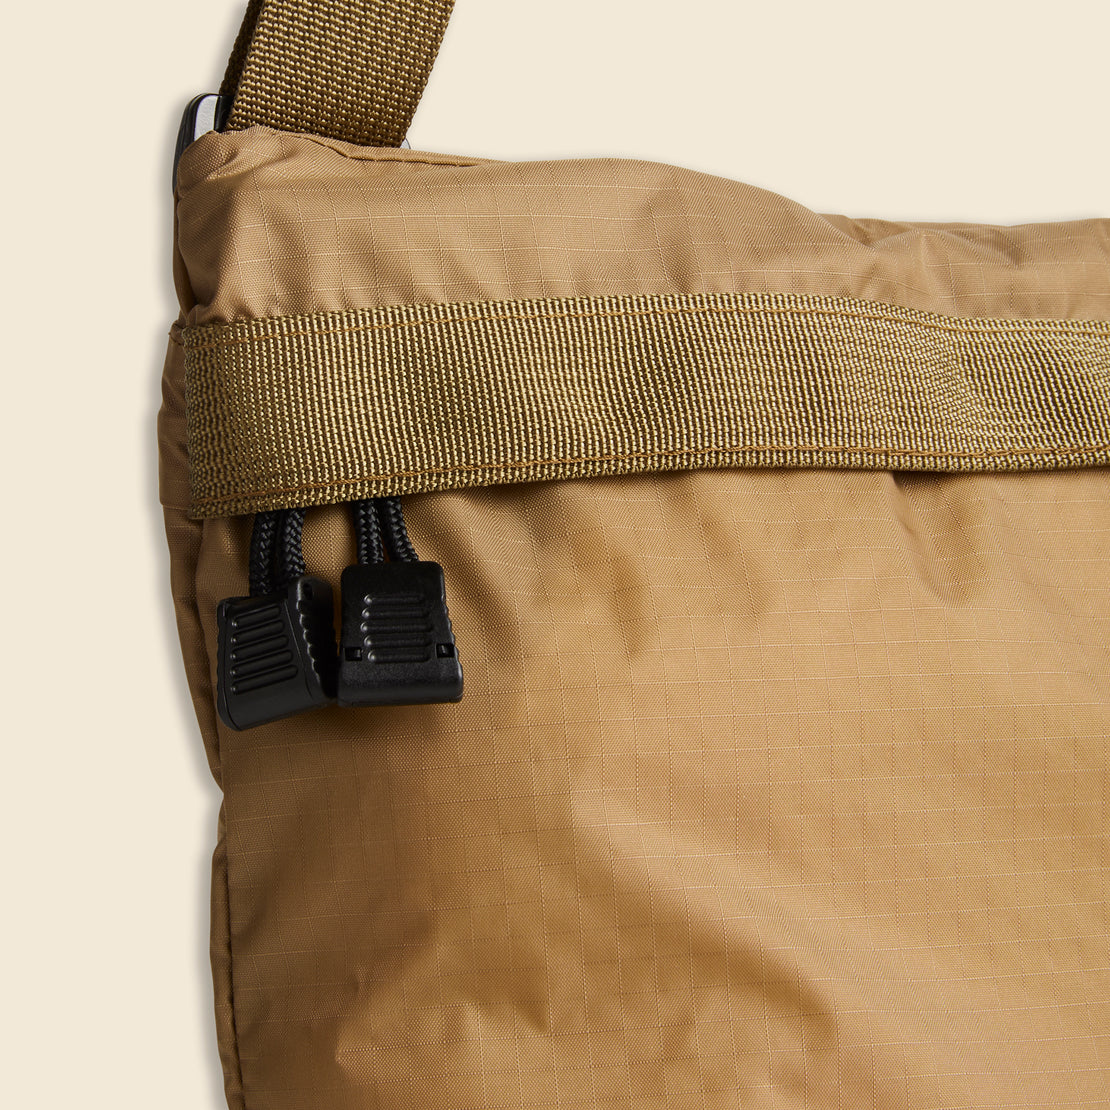 Nylon Crossbody - Coyote - 8.6.4 Design - STAG Provisions - W - Accessories - Bag